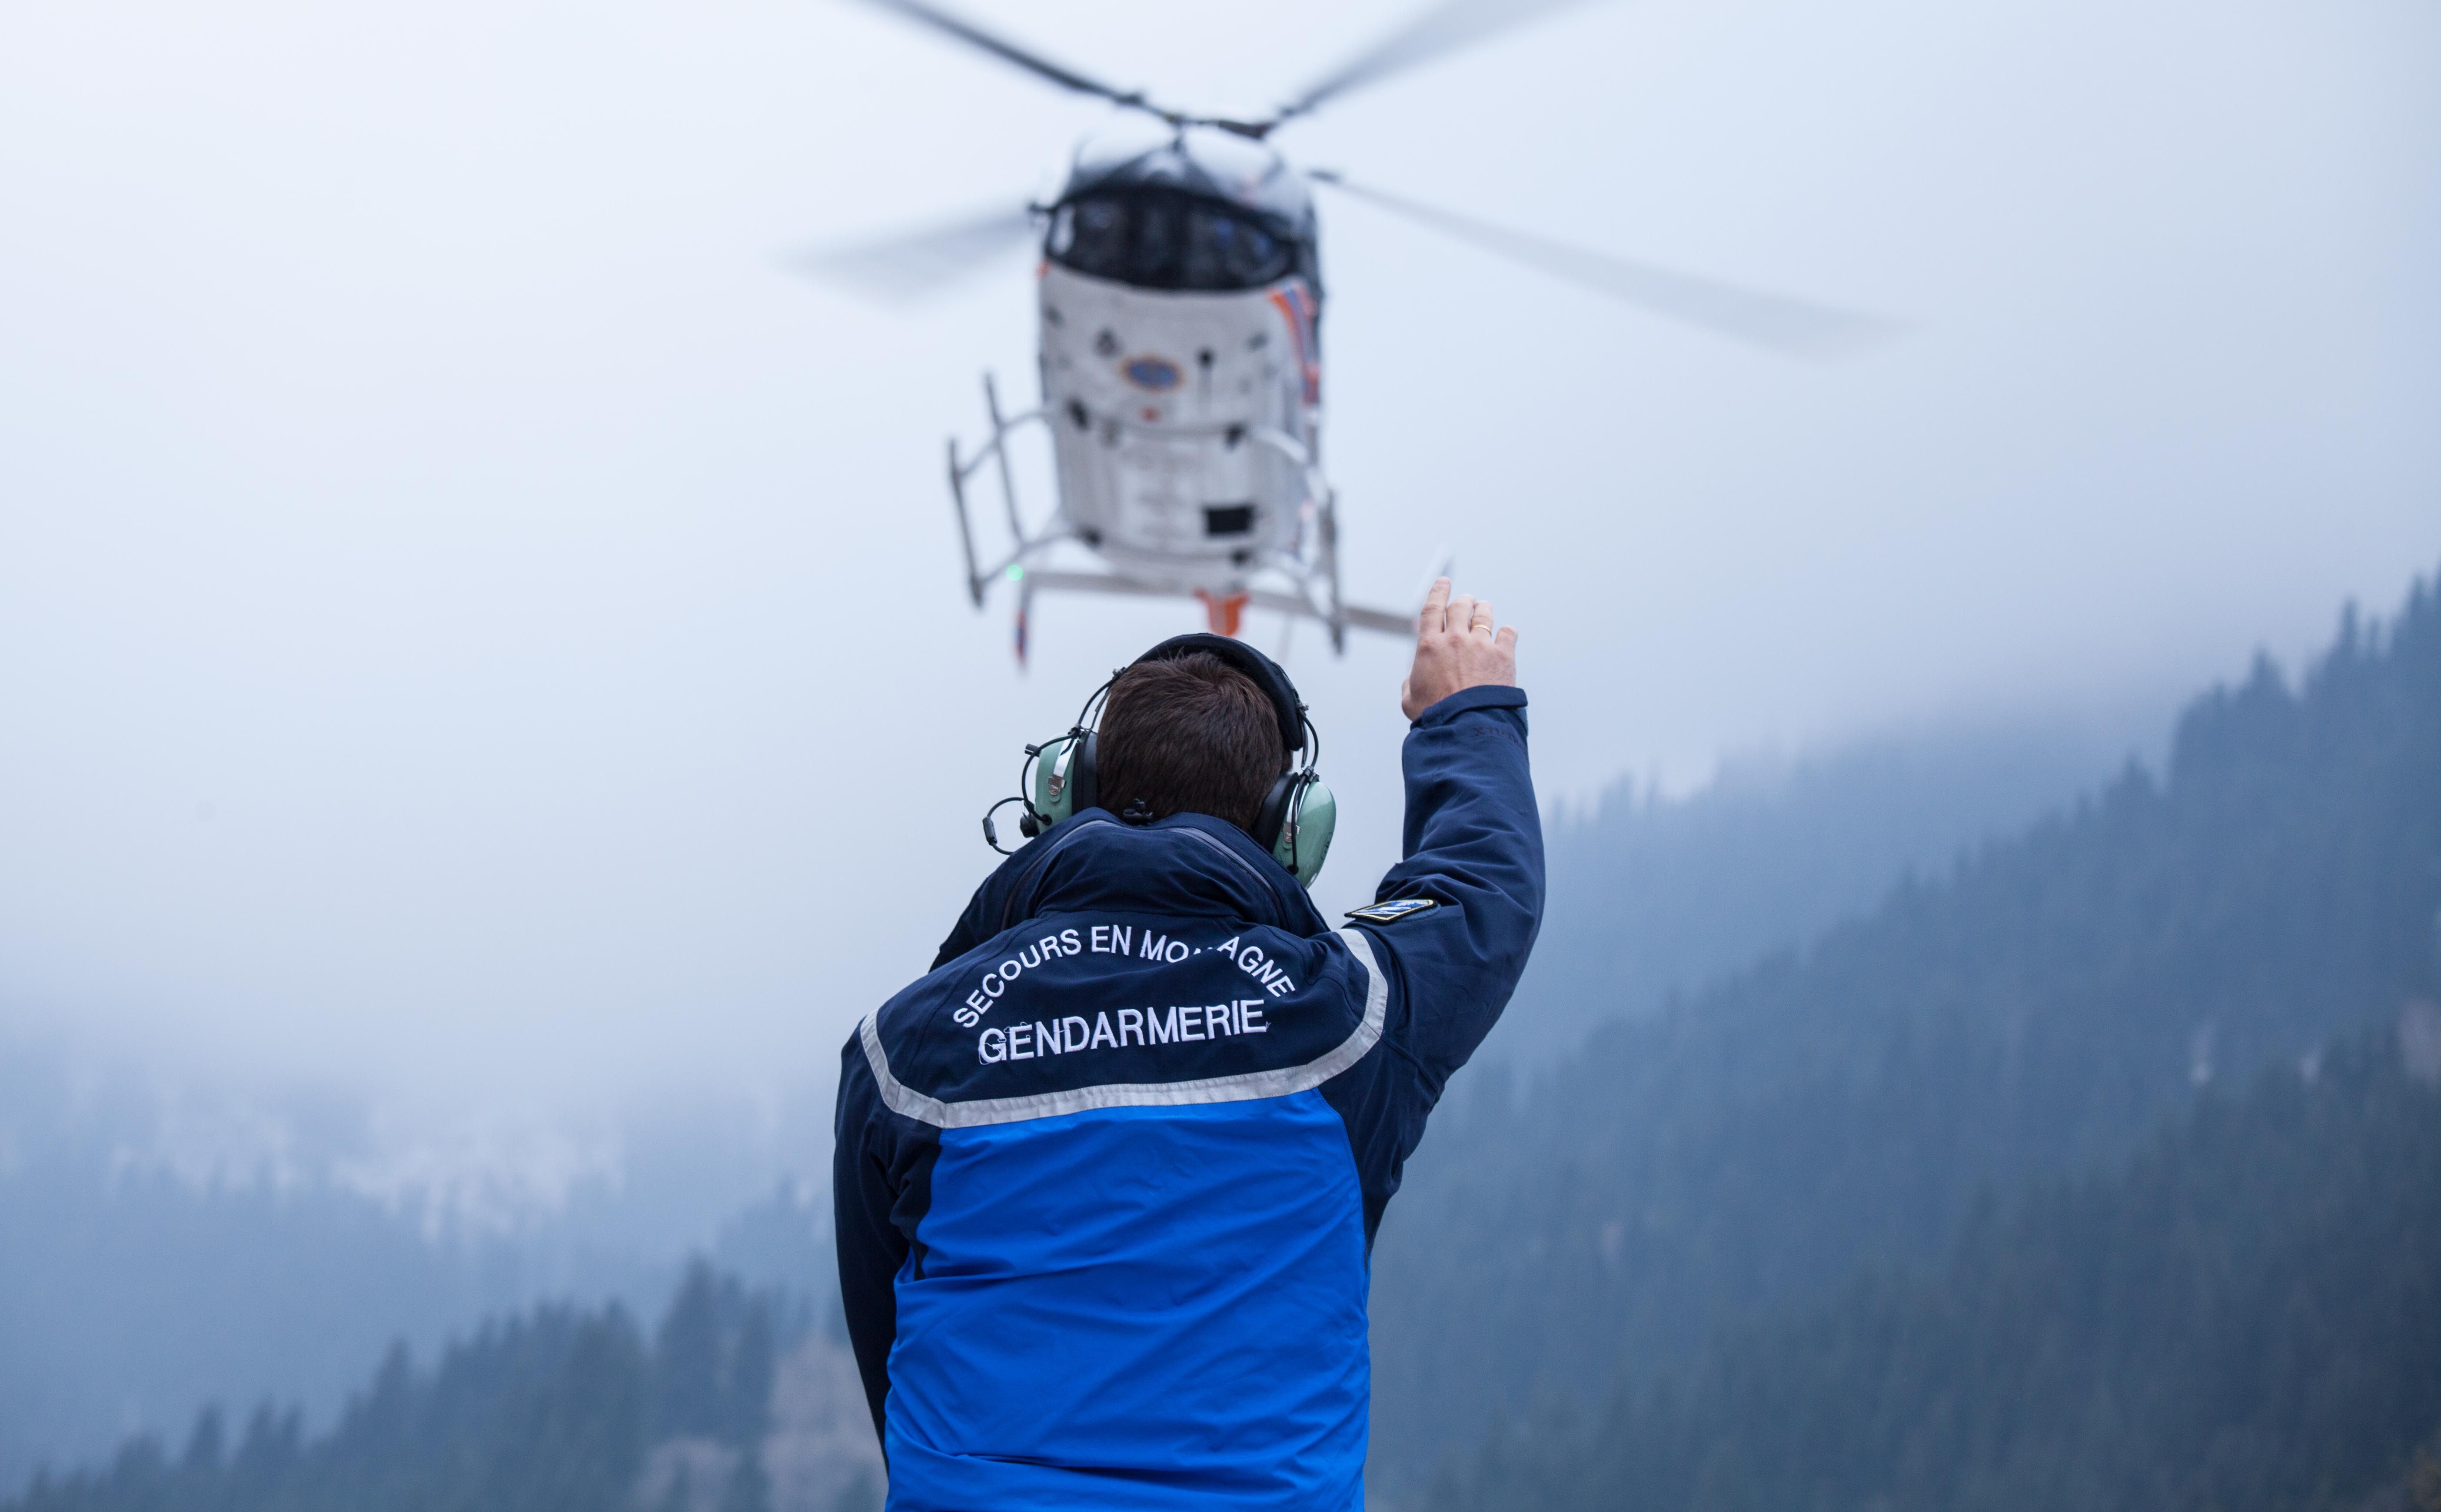 Модель ЕС 145 – небольшой, достаточно легкий вертолет, который летает исключительно в высокогорных местностях. Он предназначен для неотложной медицинской помощи, для поисково-спасательных работ. На борту могут находиться до 5 пассажиров.